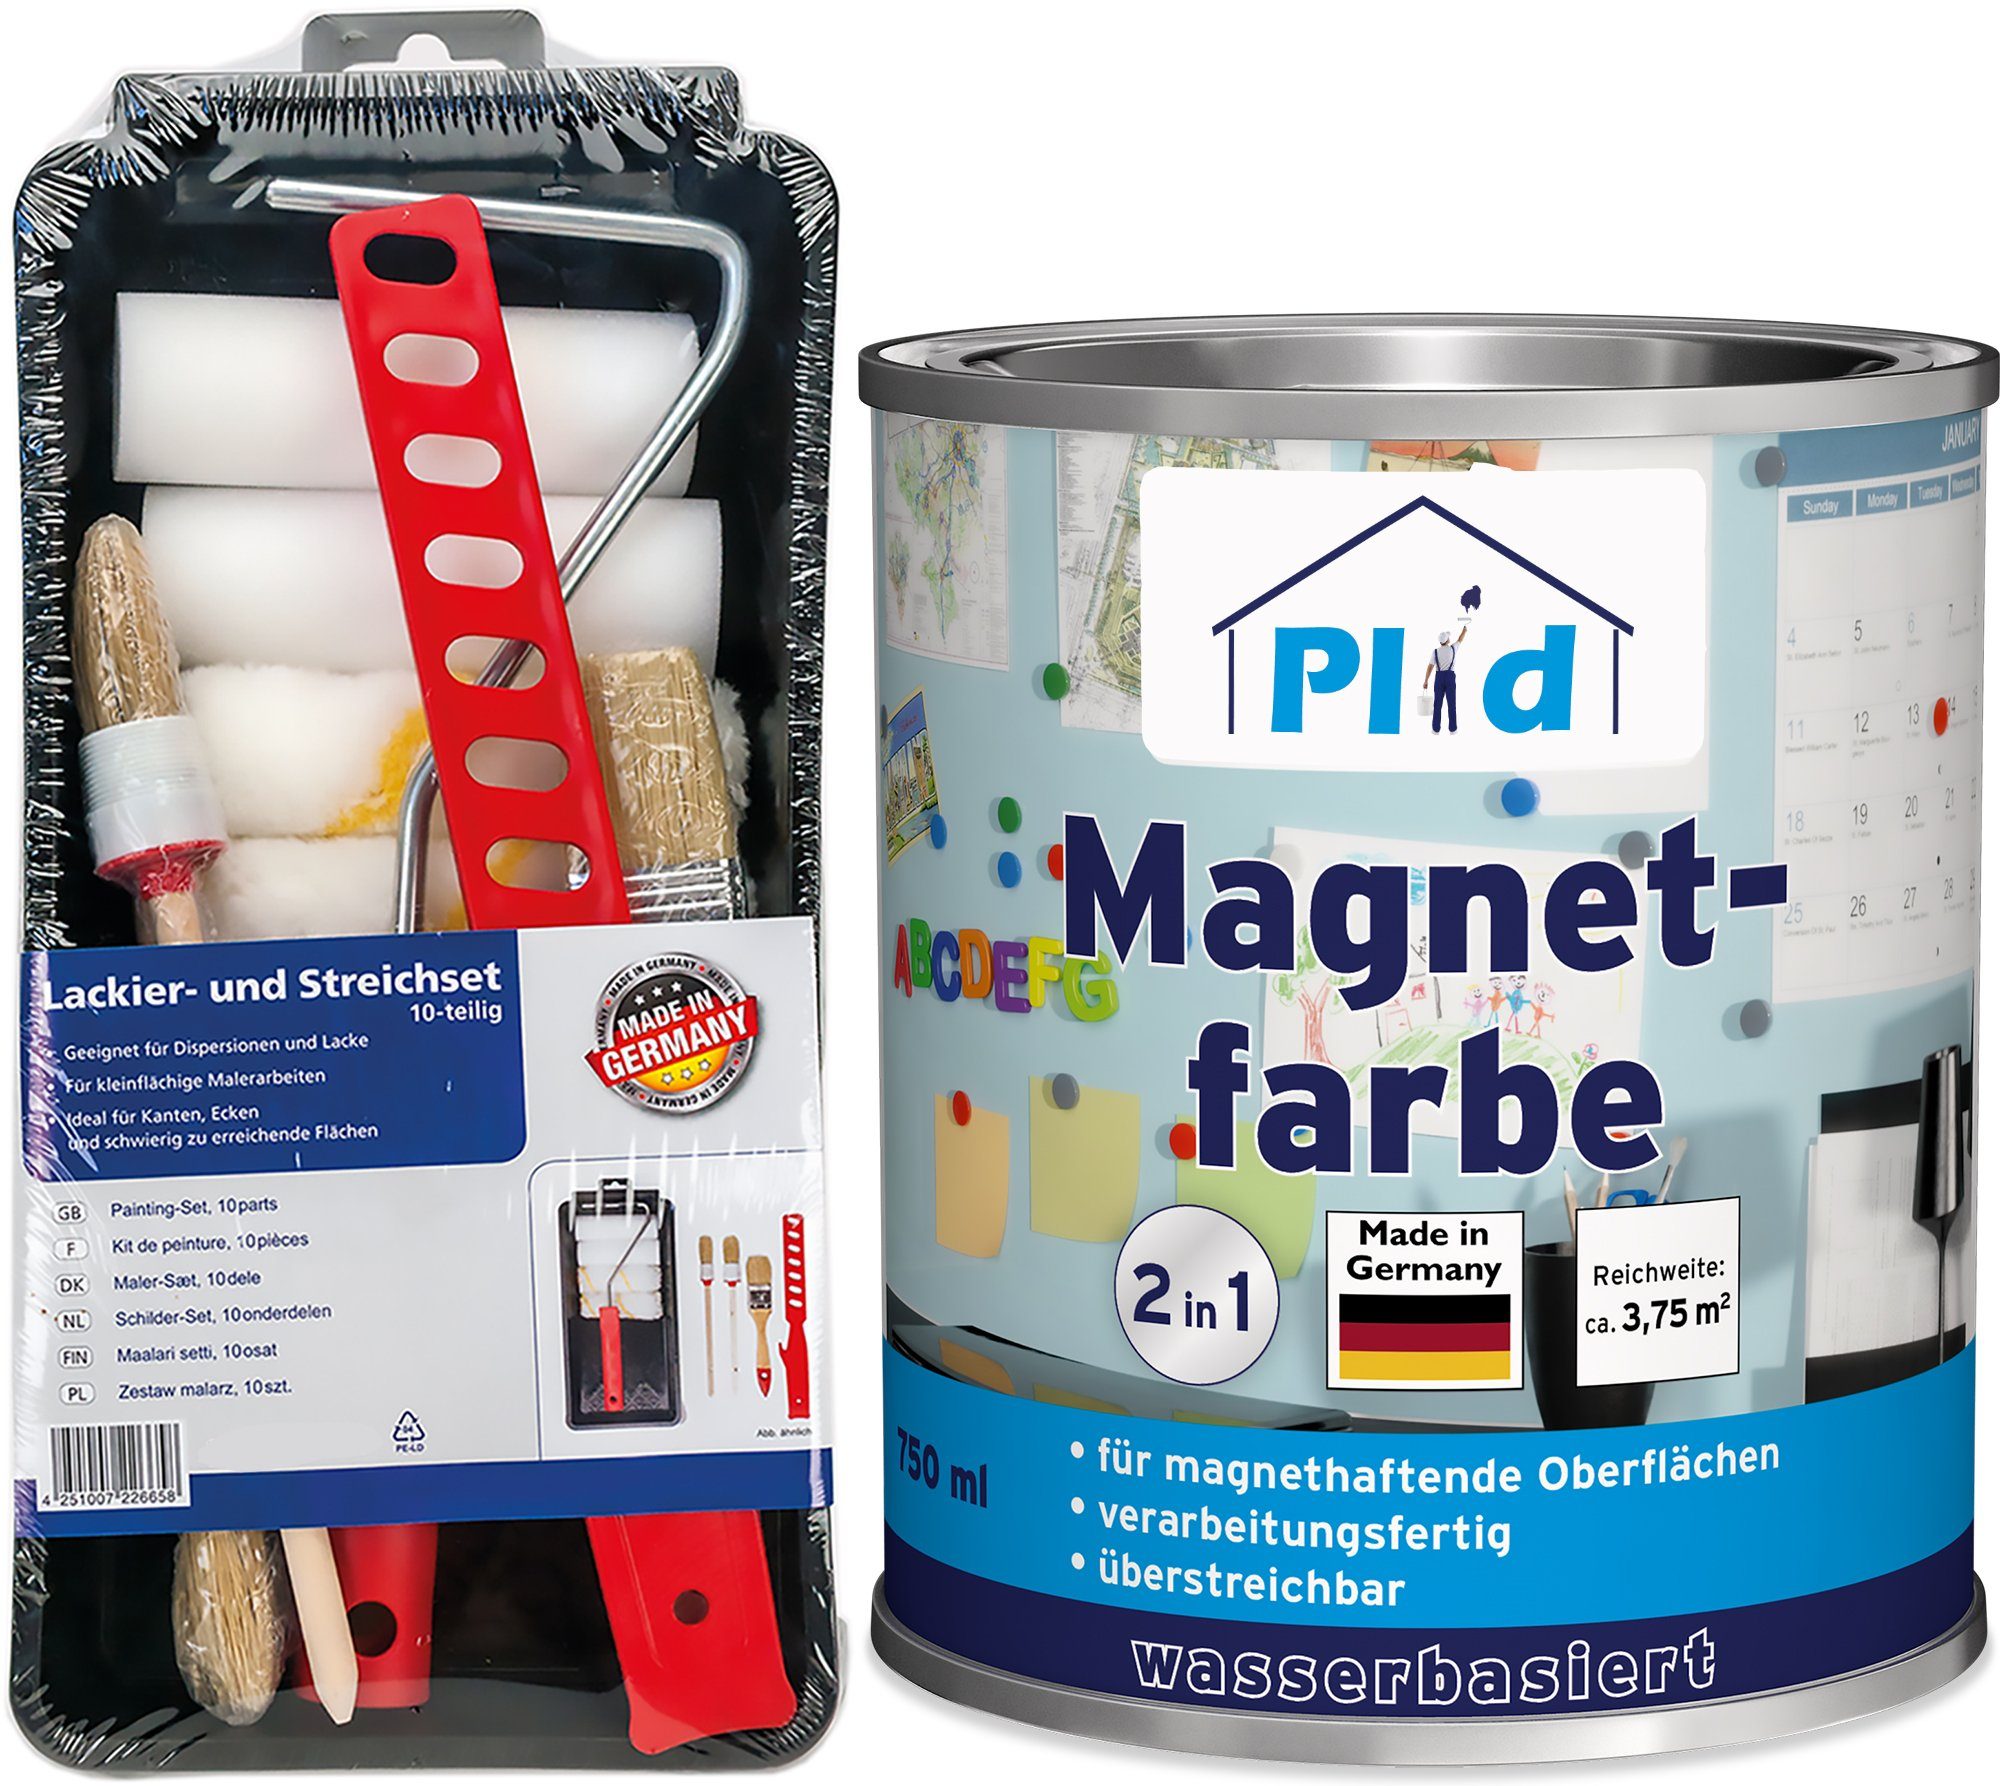 plid Magnetfarbe Premium Magnetfarbe Magnet Magnetlack Magnetwand Set, Schnelltrocknend, Magnetisch